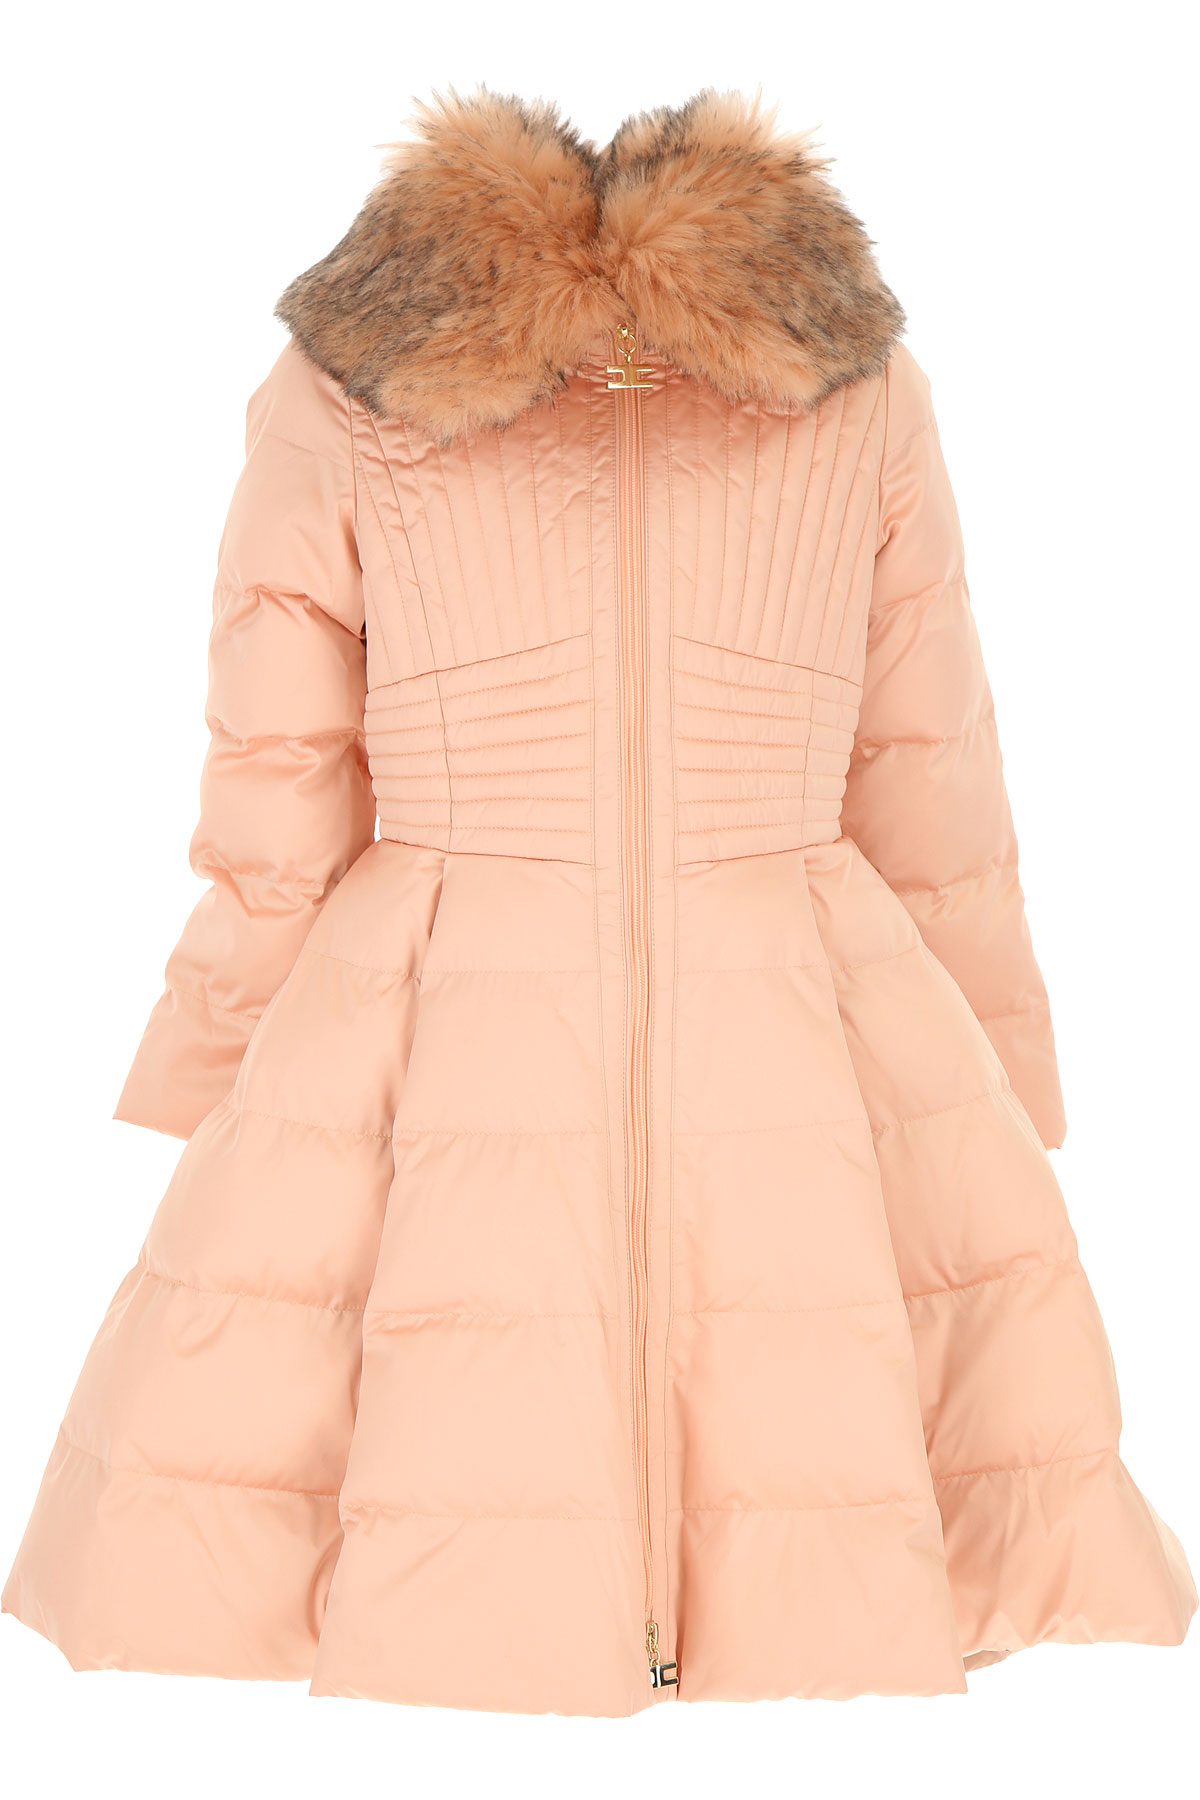 Elisabetta Franchi Kinder Daunen Jacke für Mädchen, Soft Shell Ski Jacken Günstig im Sale, Pink, Polyester, 2017, M XL